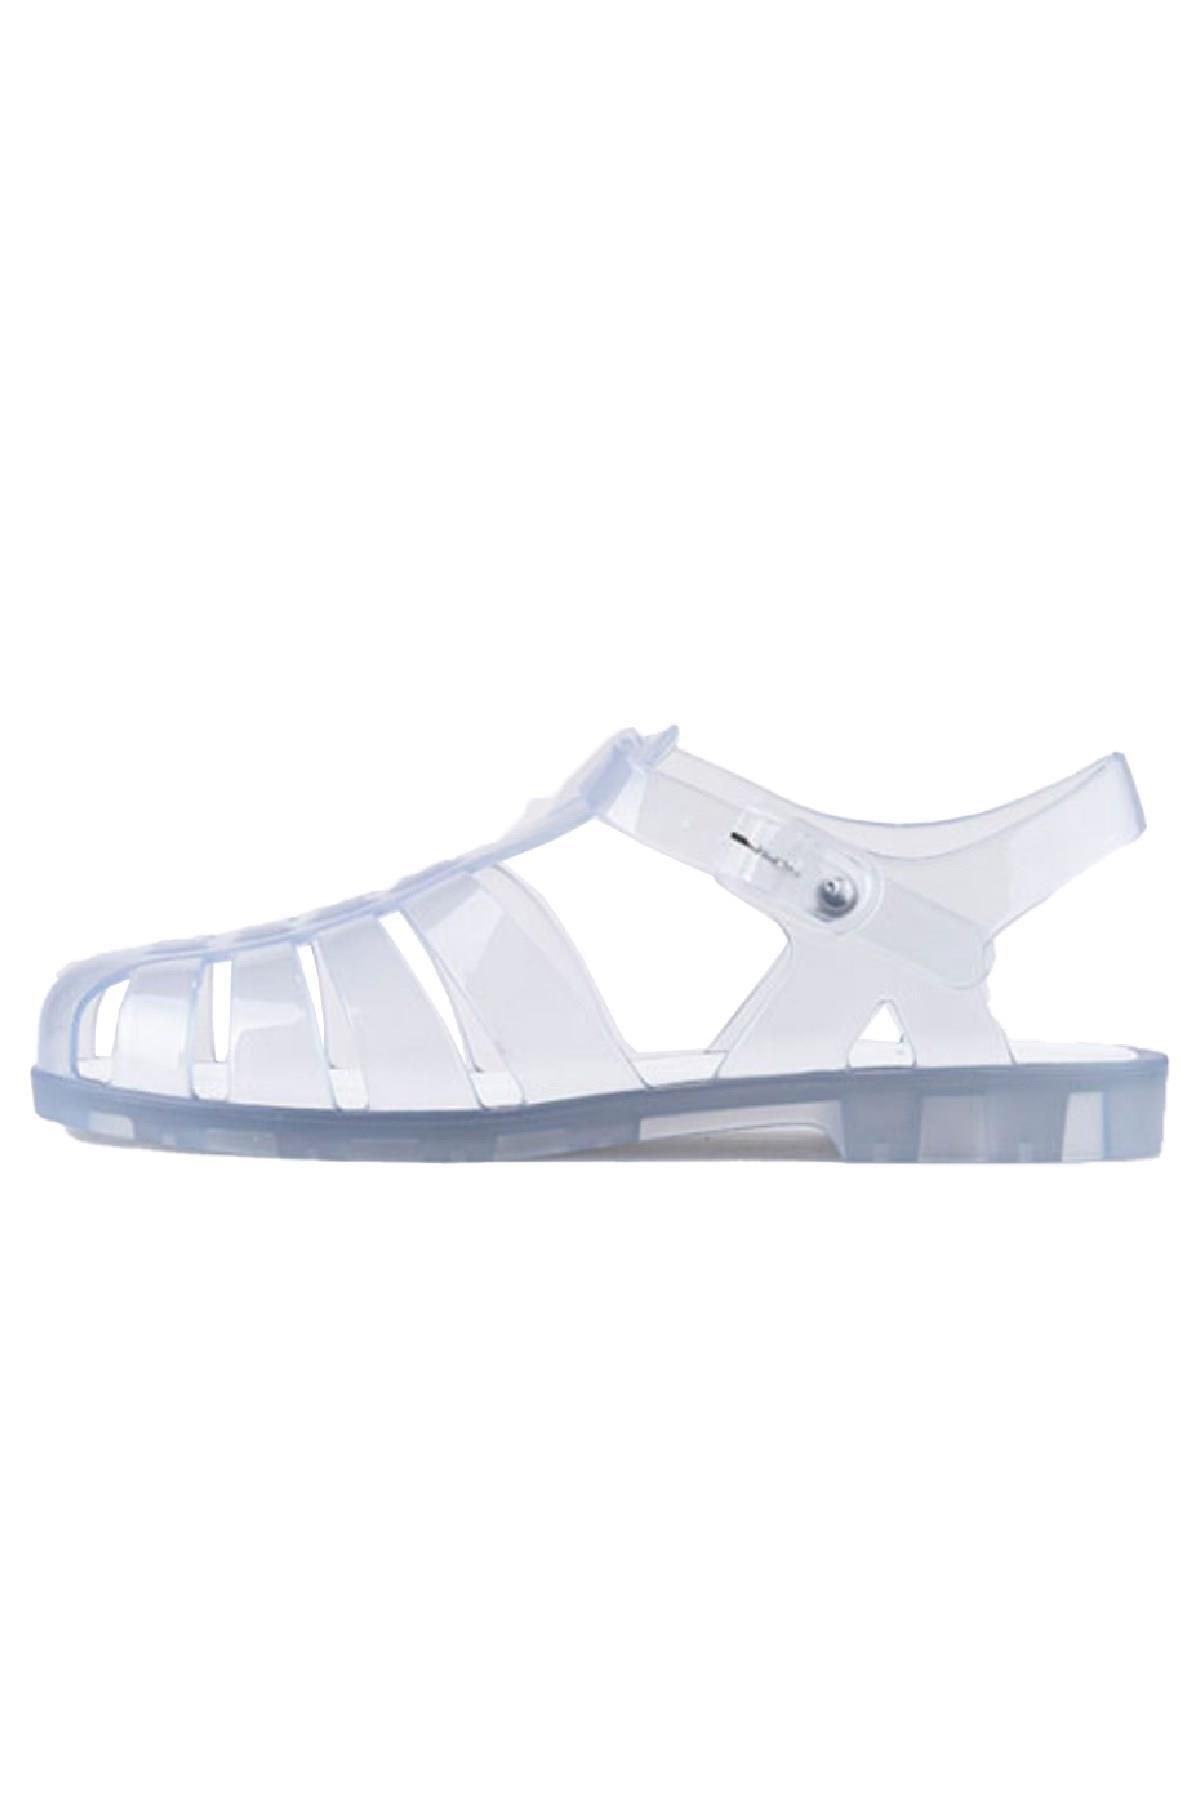 IGOR S10261-070 Biarritz Cristal Kadın Sandalet